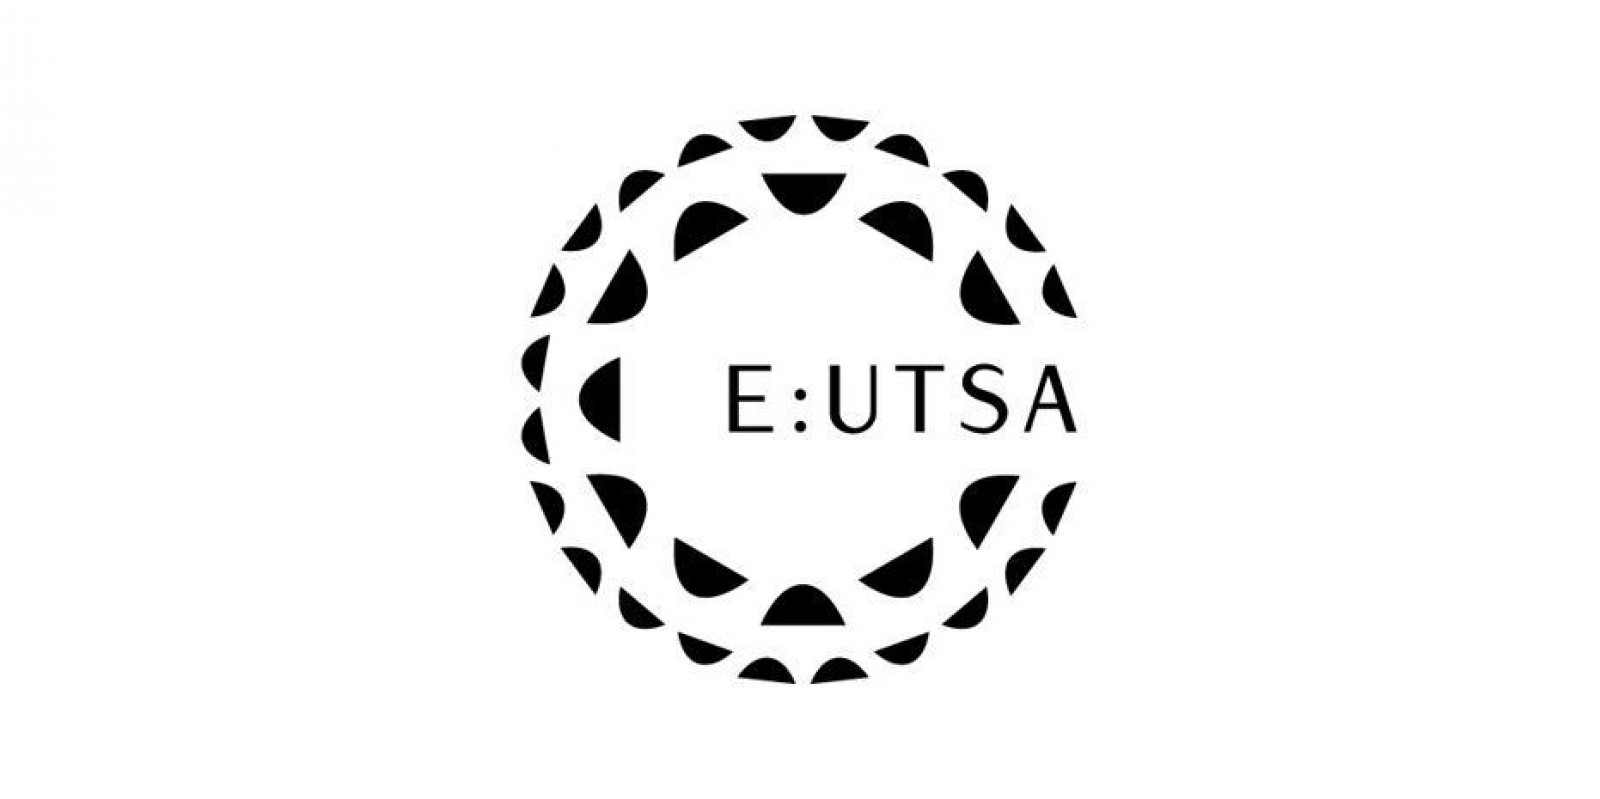 ГИТИС вошёл в Союз европейских театральных школ и академий (E:UTSA)